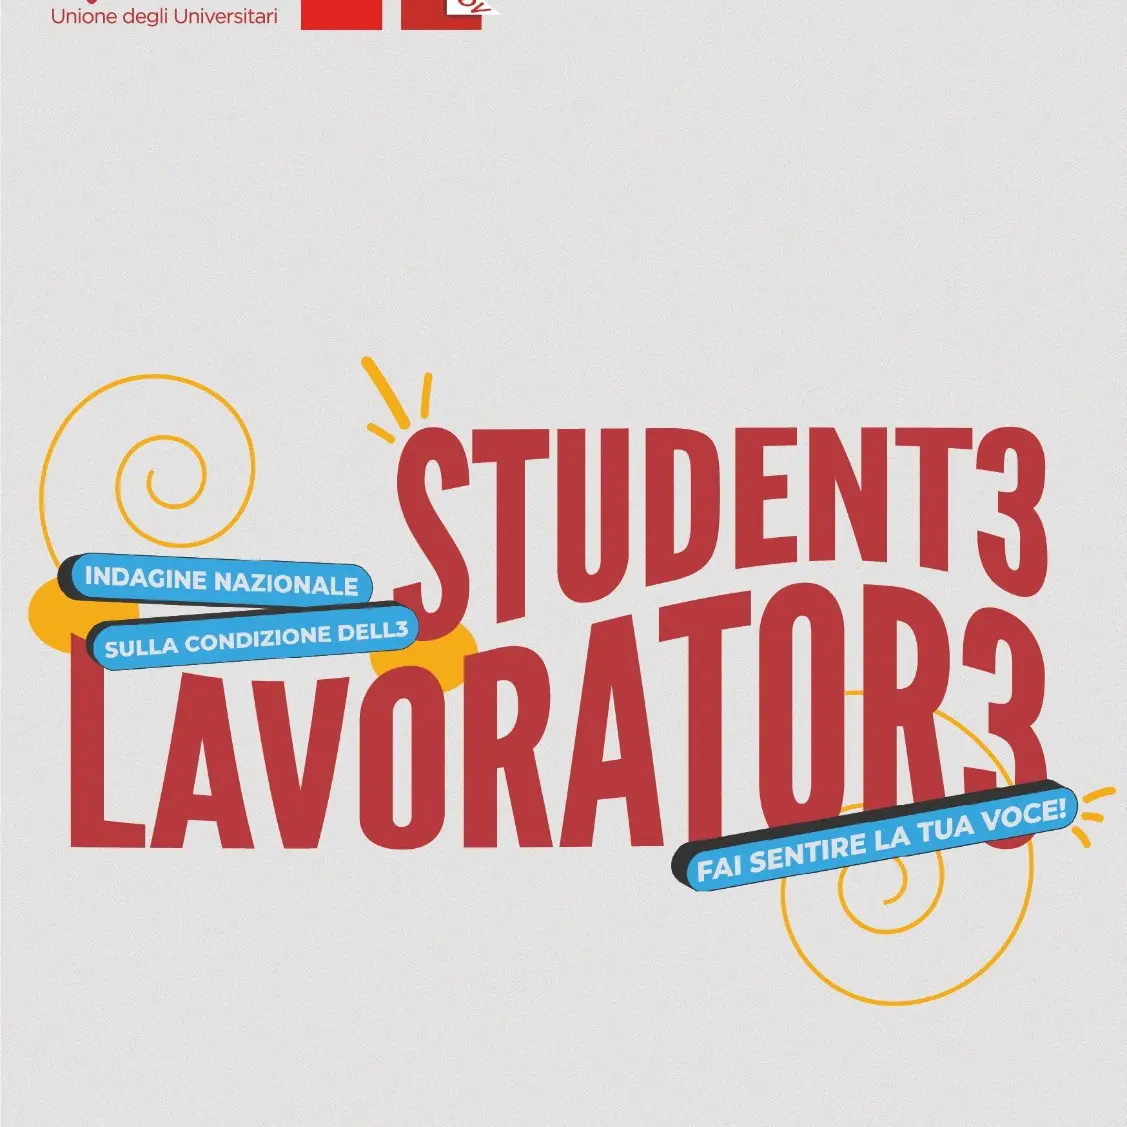 UDU in collaborazione con CGIL e FDV lancia un'inchiesta sull3 student3 lavorator3. Compila il questionario